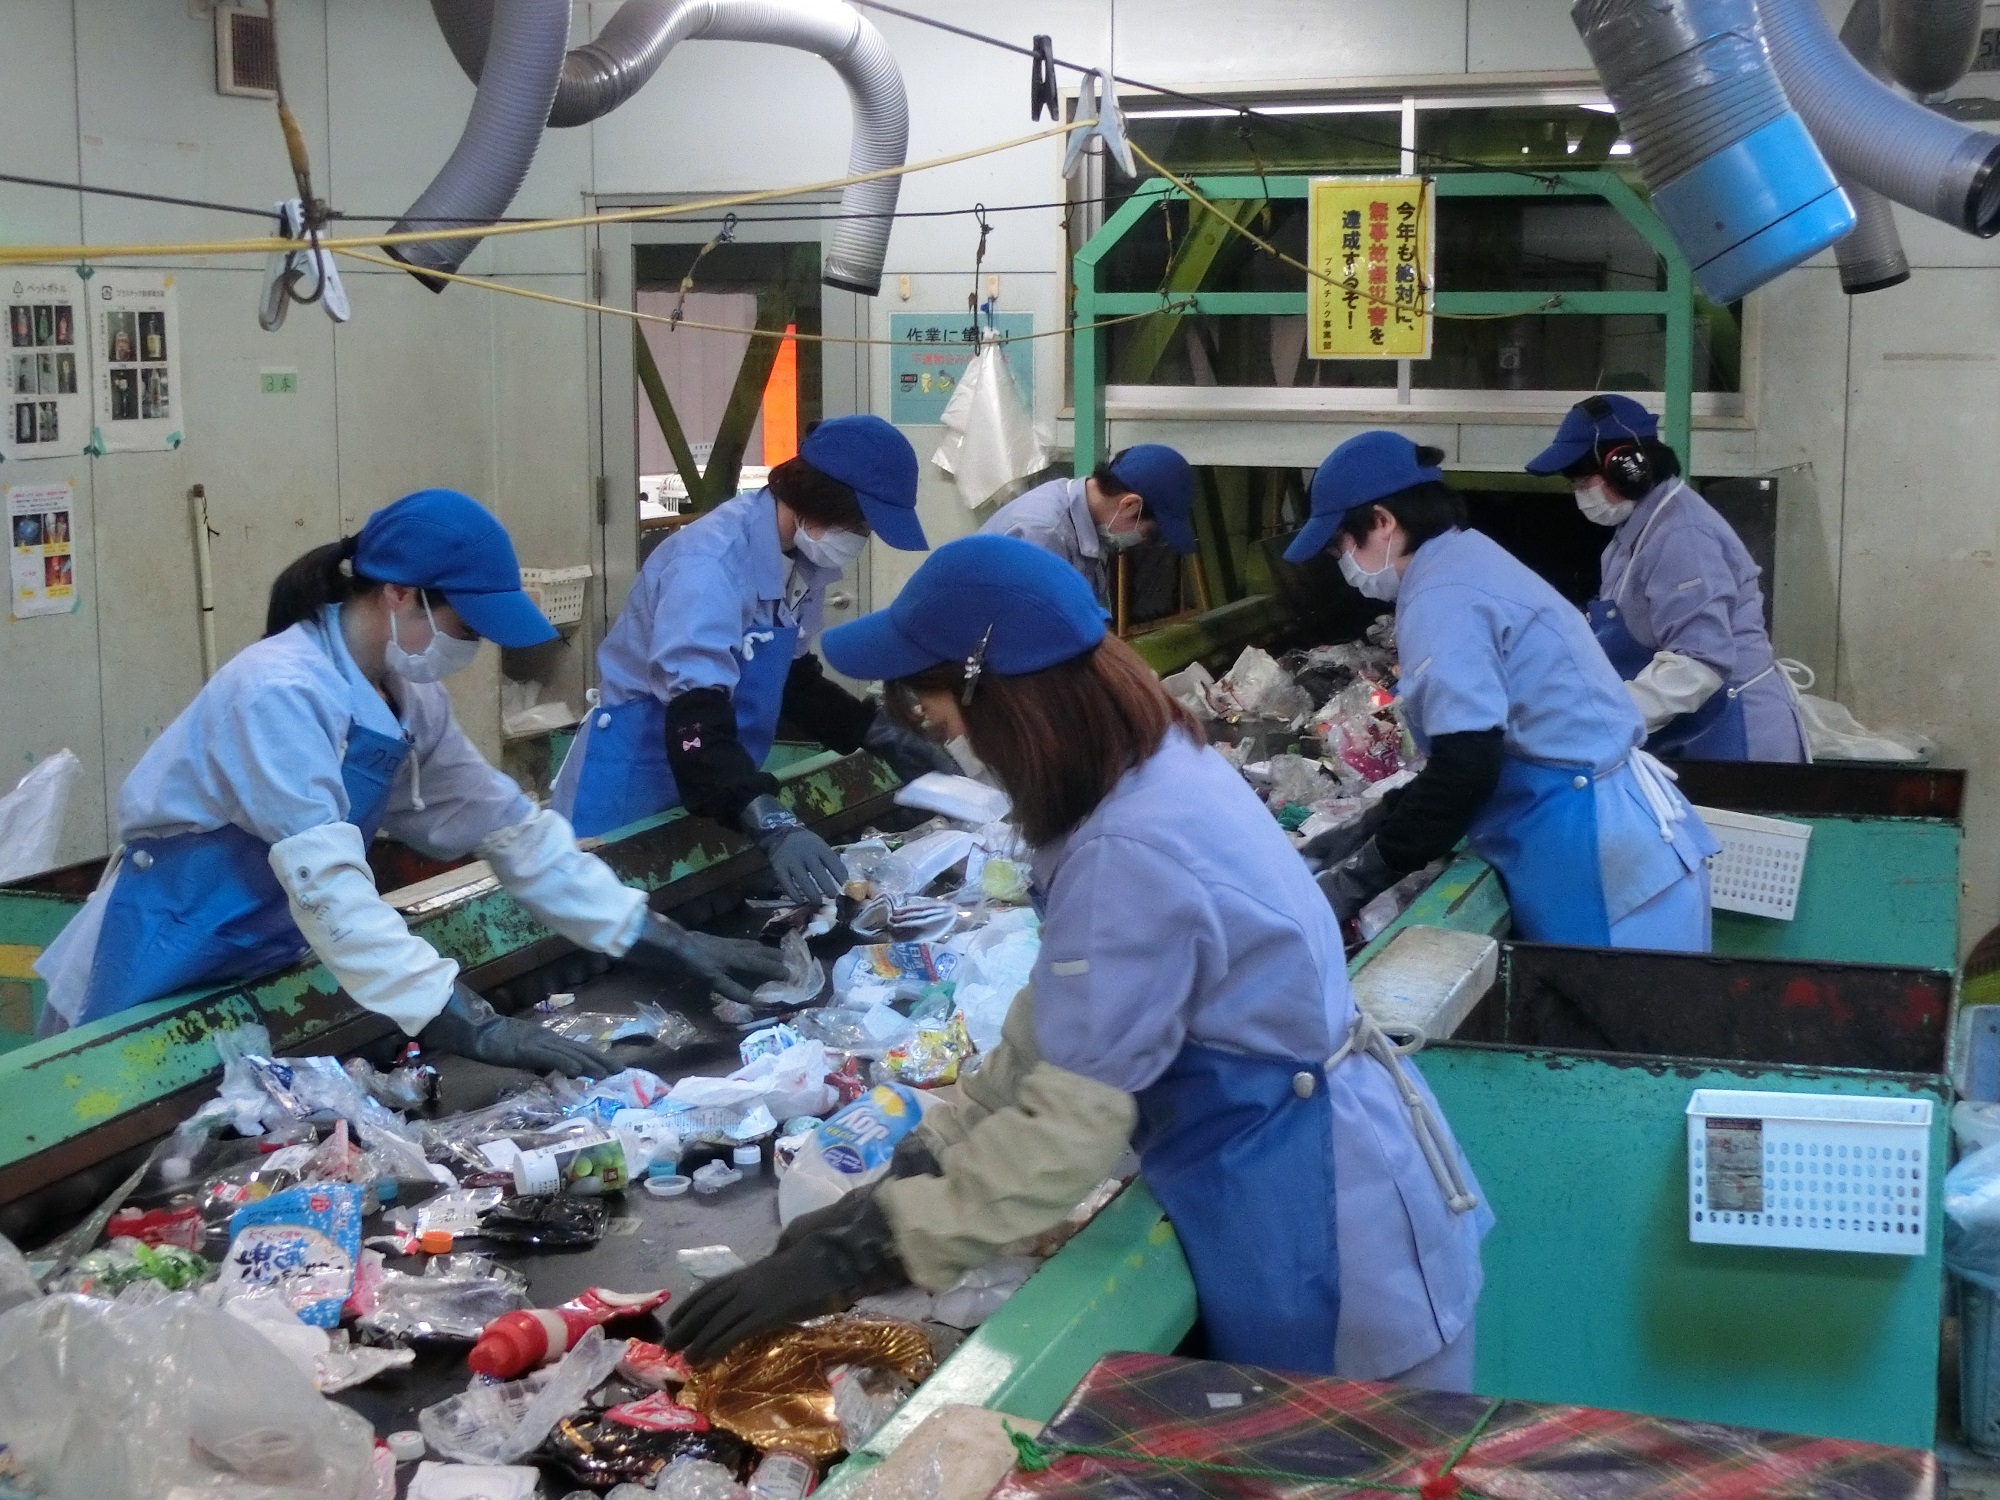 日本資源流通(株)
北九州市プラスチック資源化センター